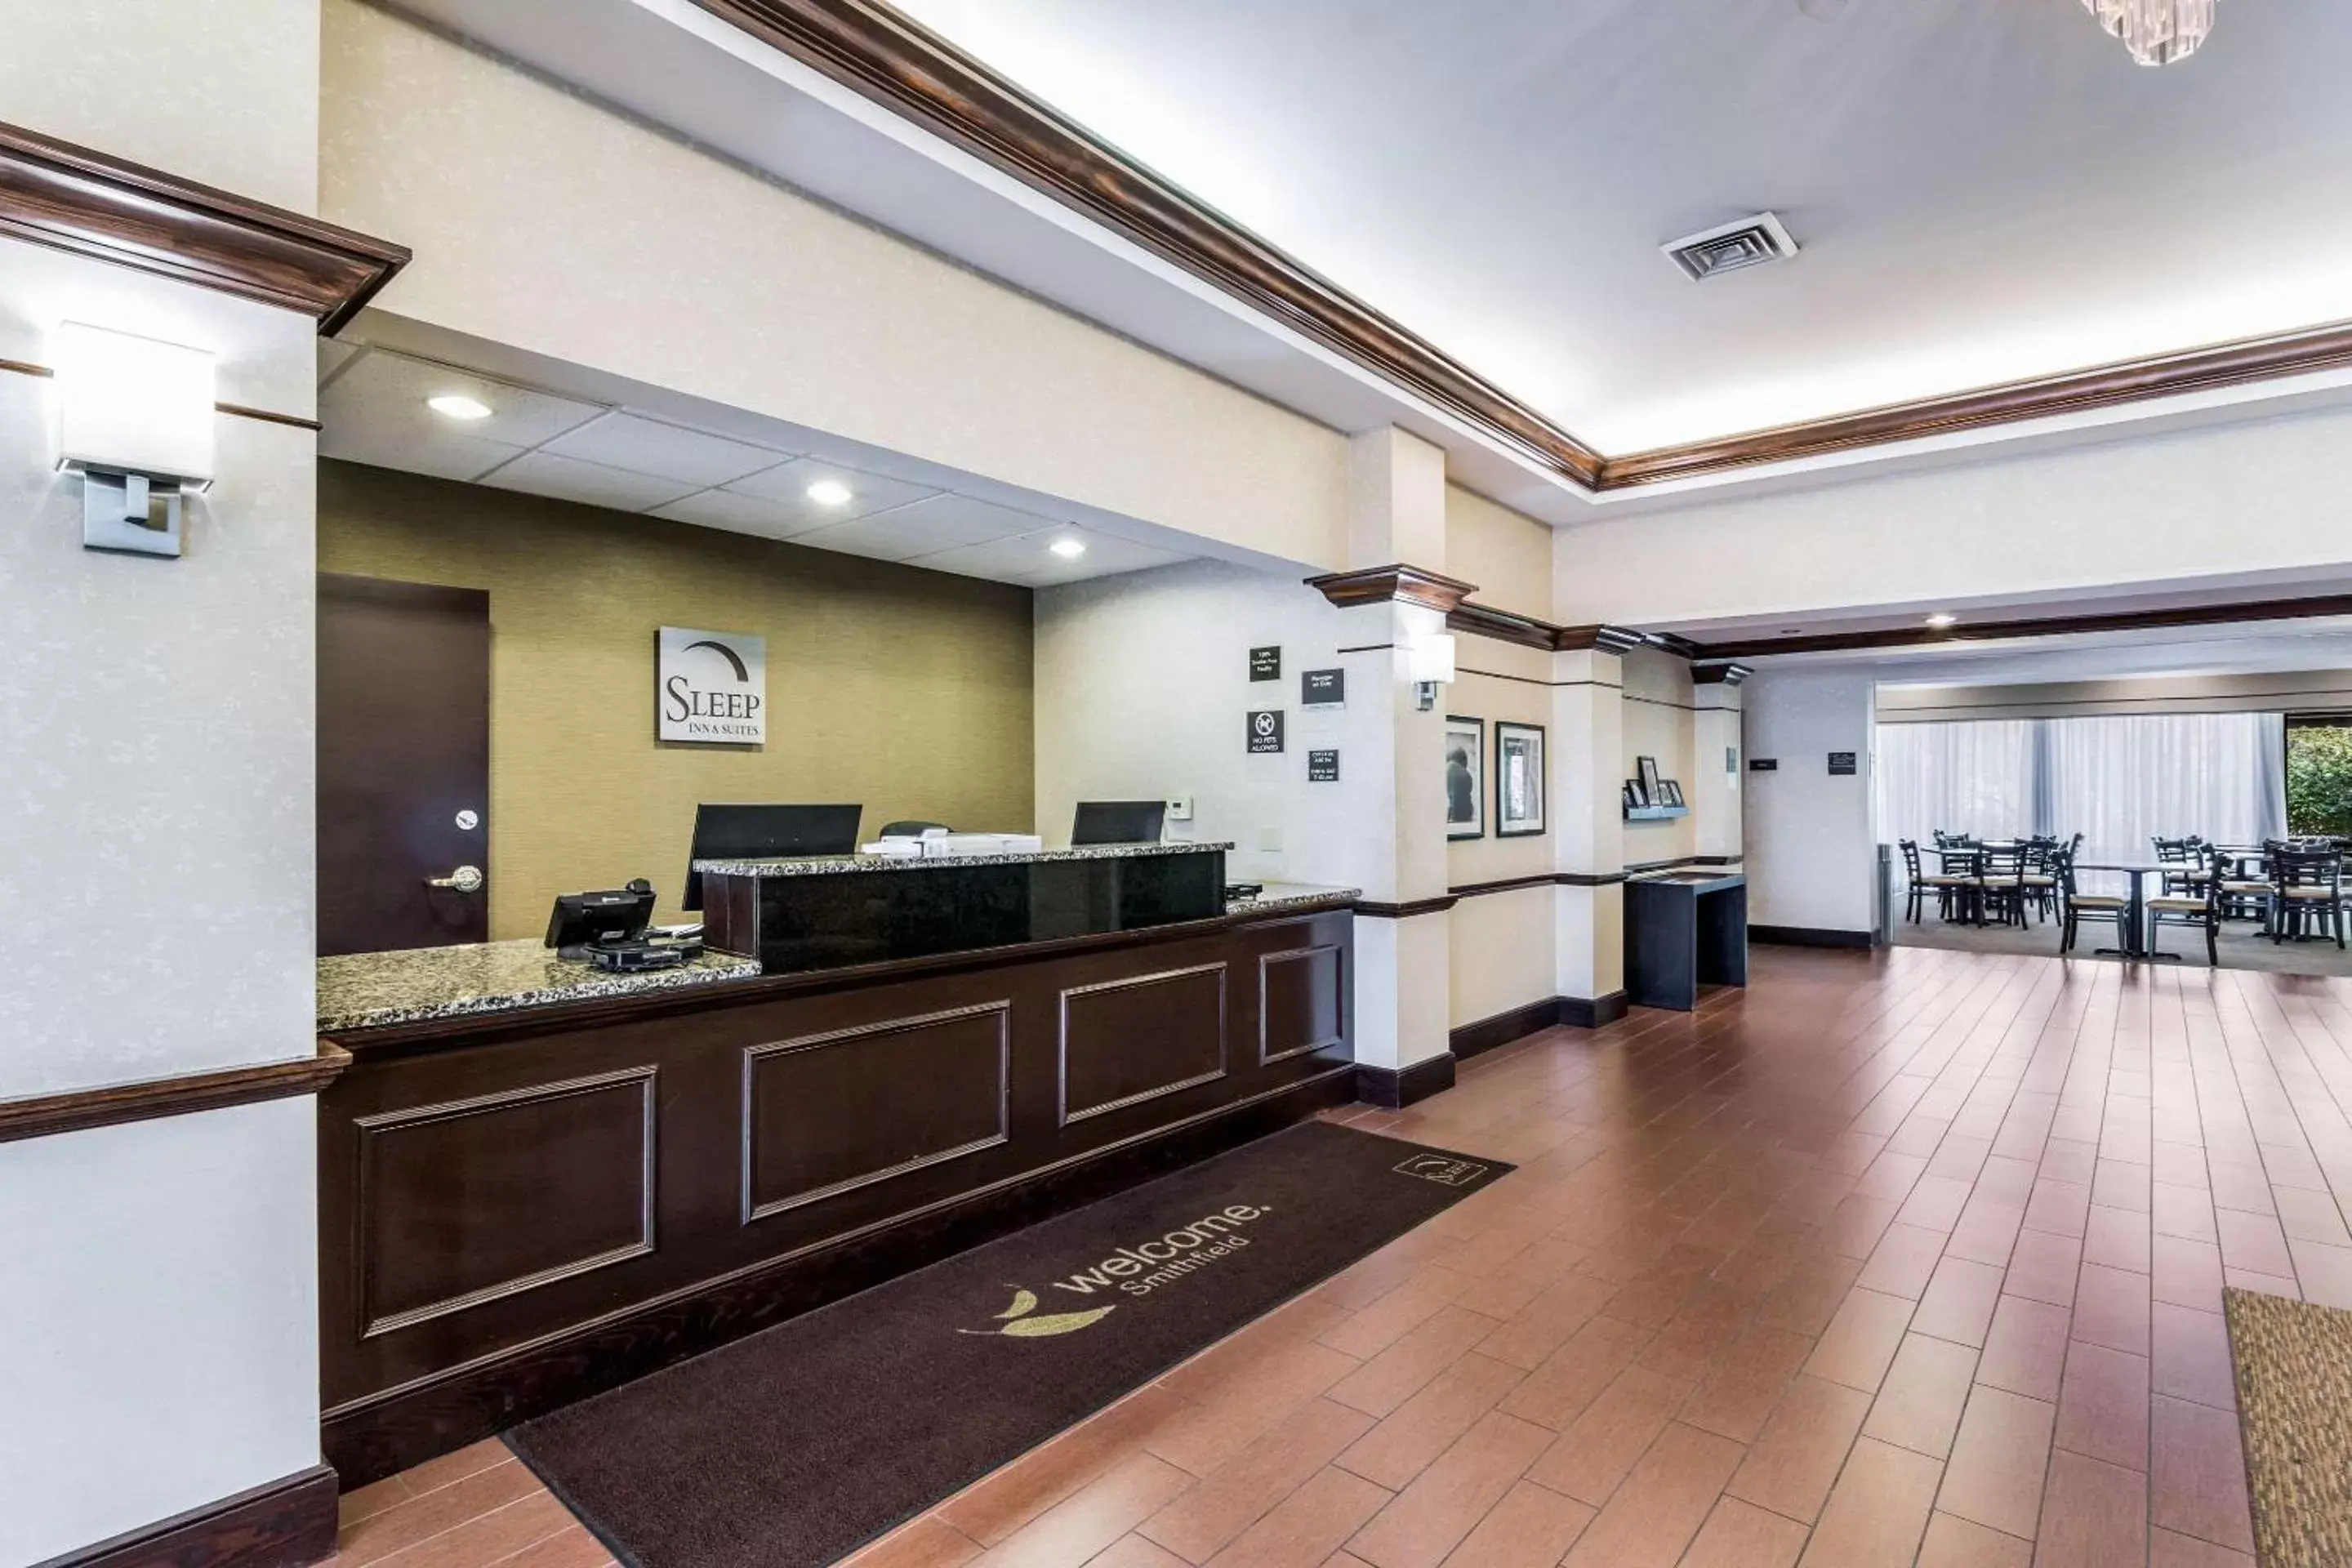 Lobby or reception, Lobby/Reception in Sleep Inn & Suites Smithfield near I-95